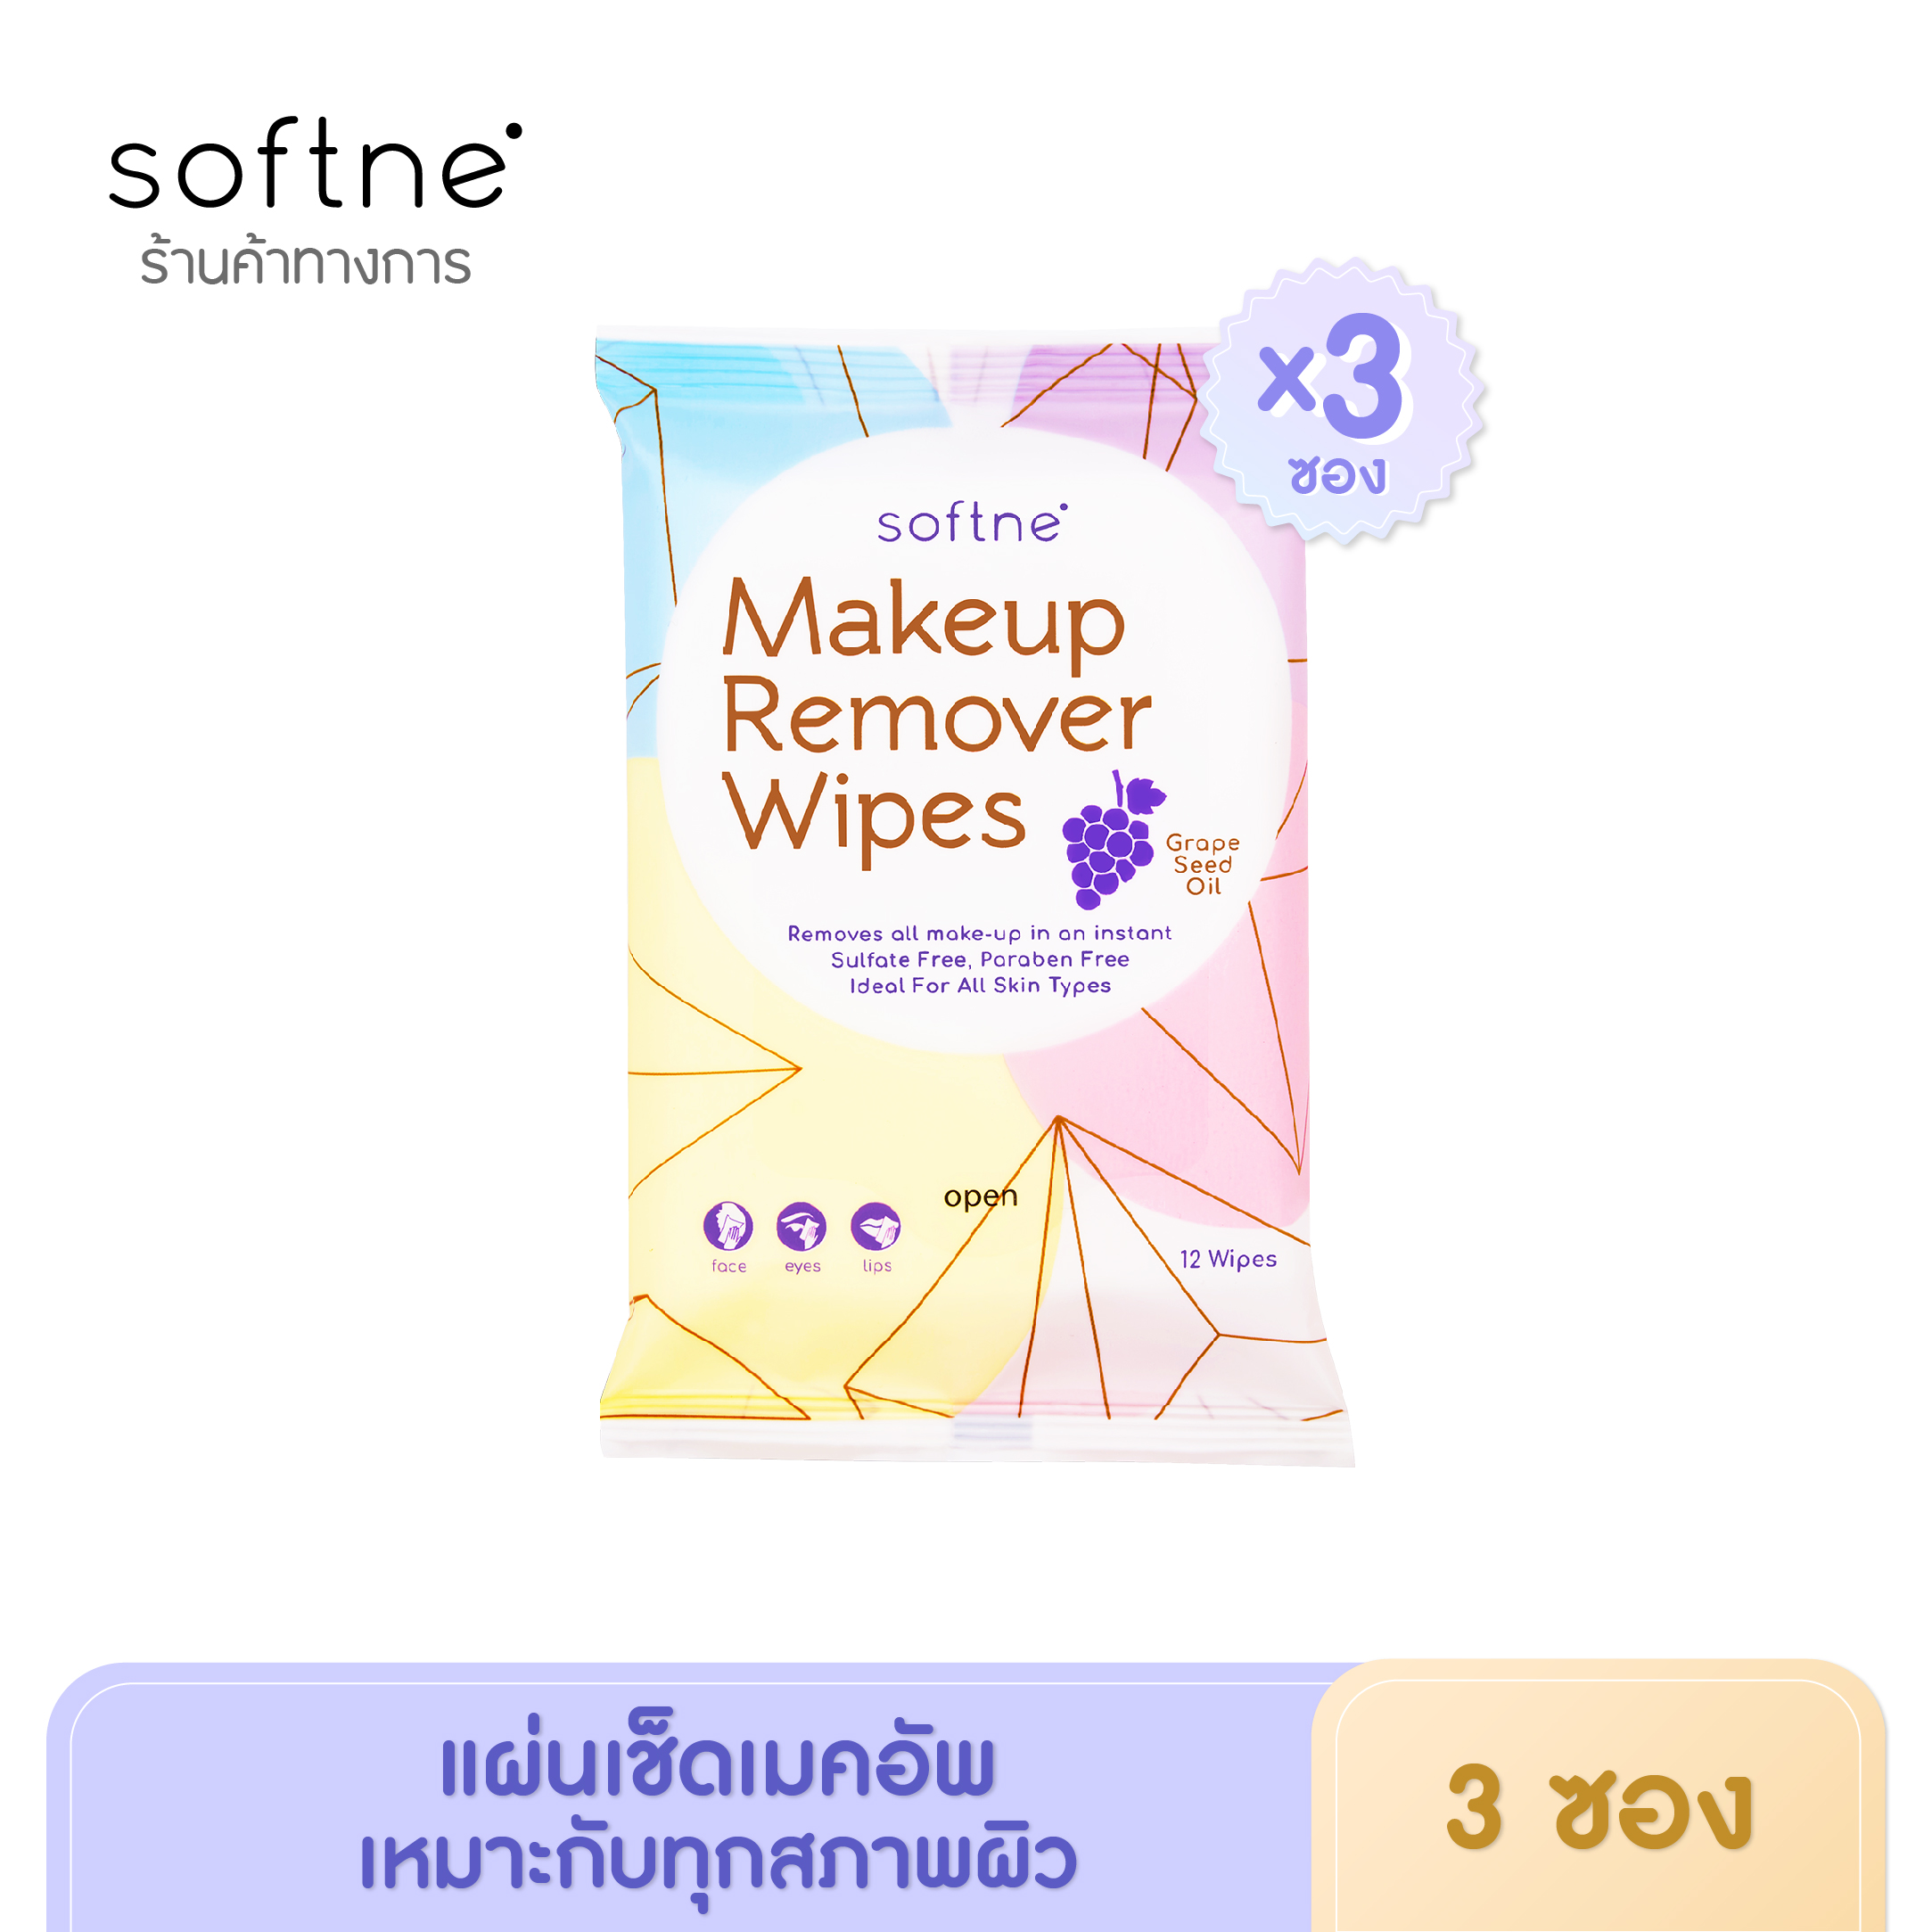 (3 ซอง)Softne' Makeup Remover Wipes เมคอัพ รีมูฟเวอร์ ไวพส์ 12 แผ่น